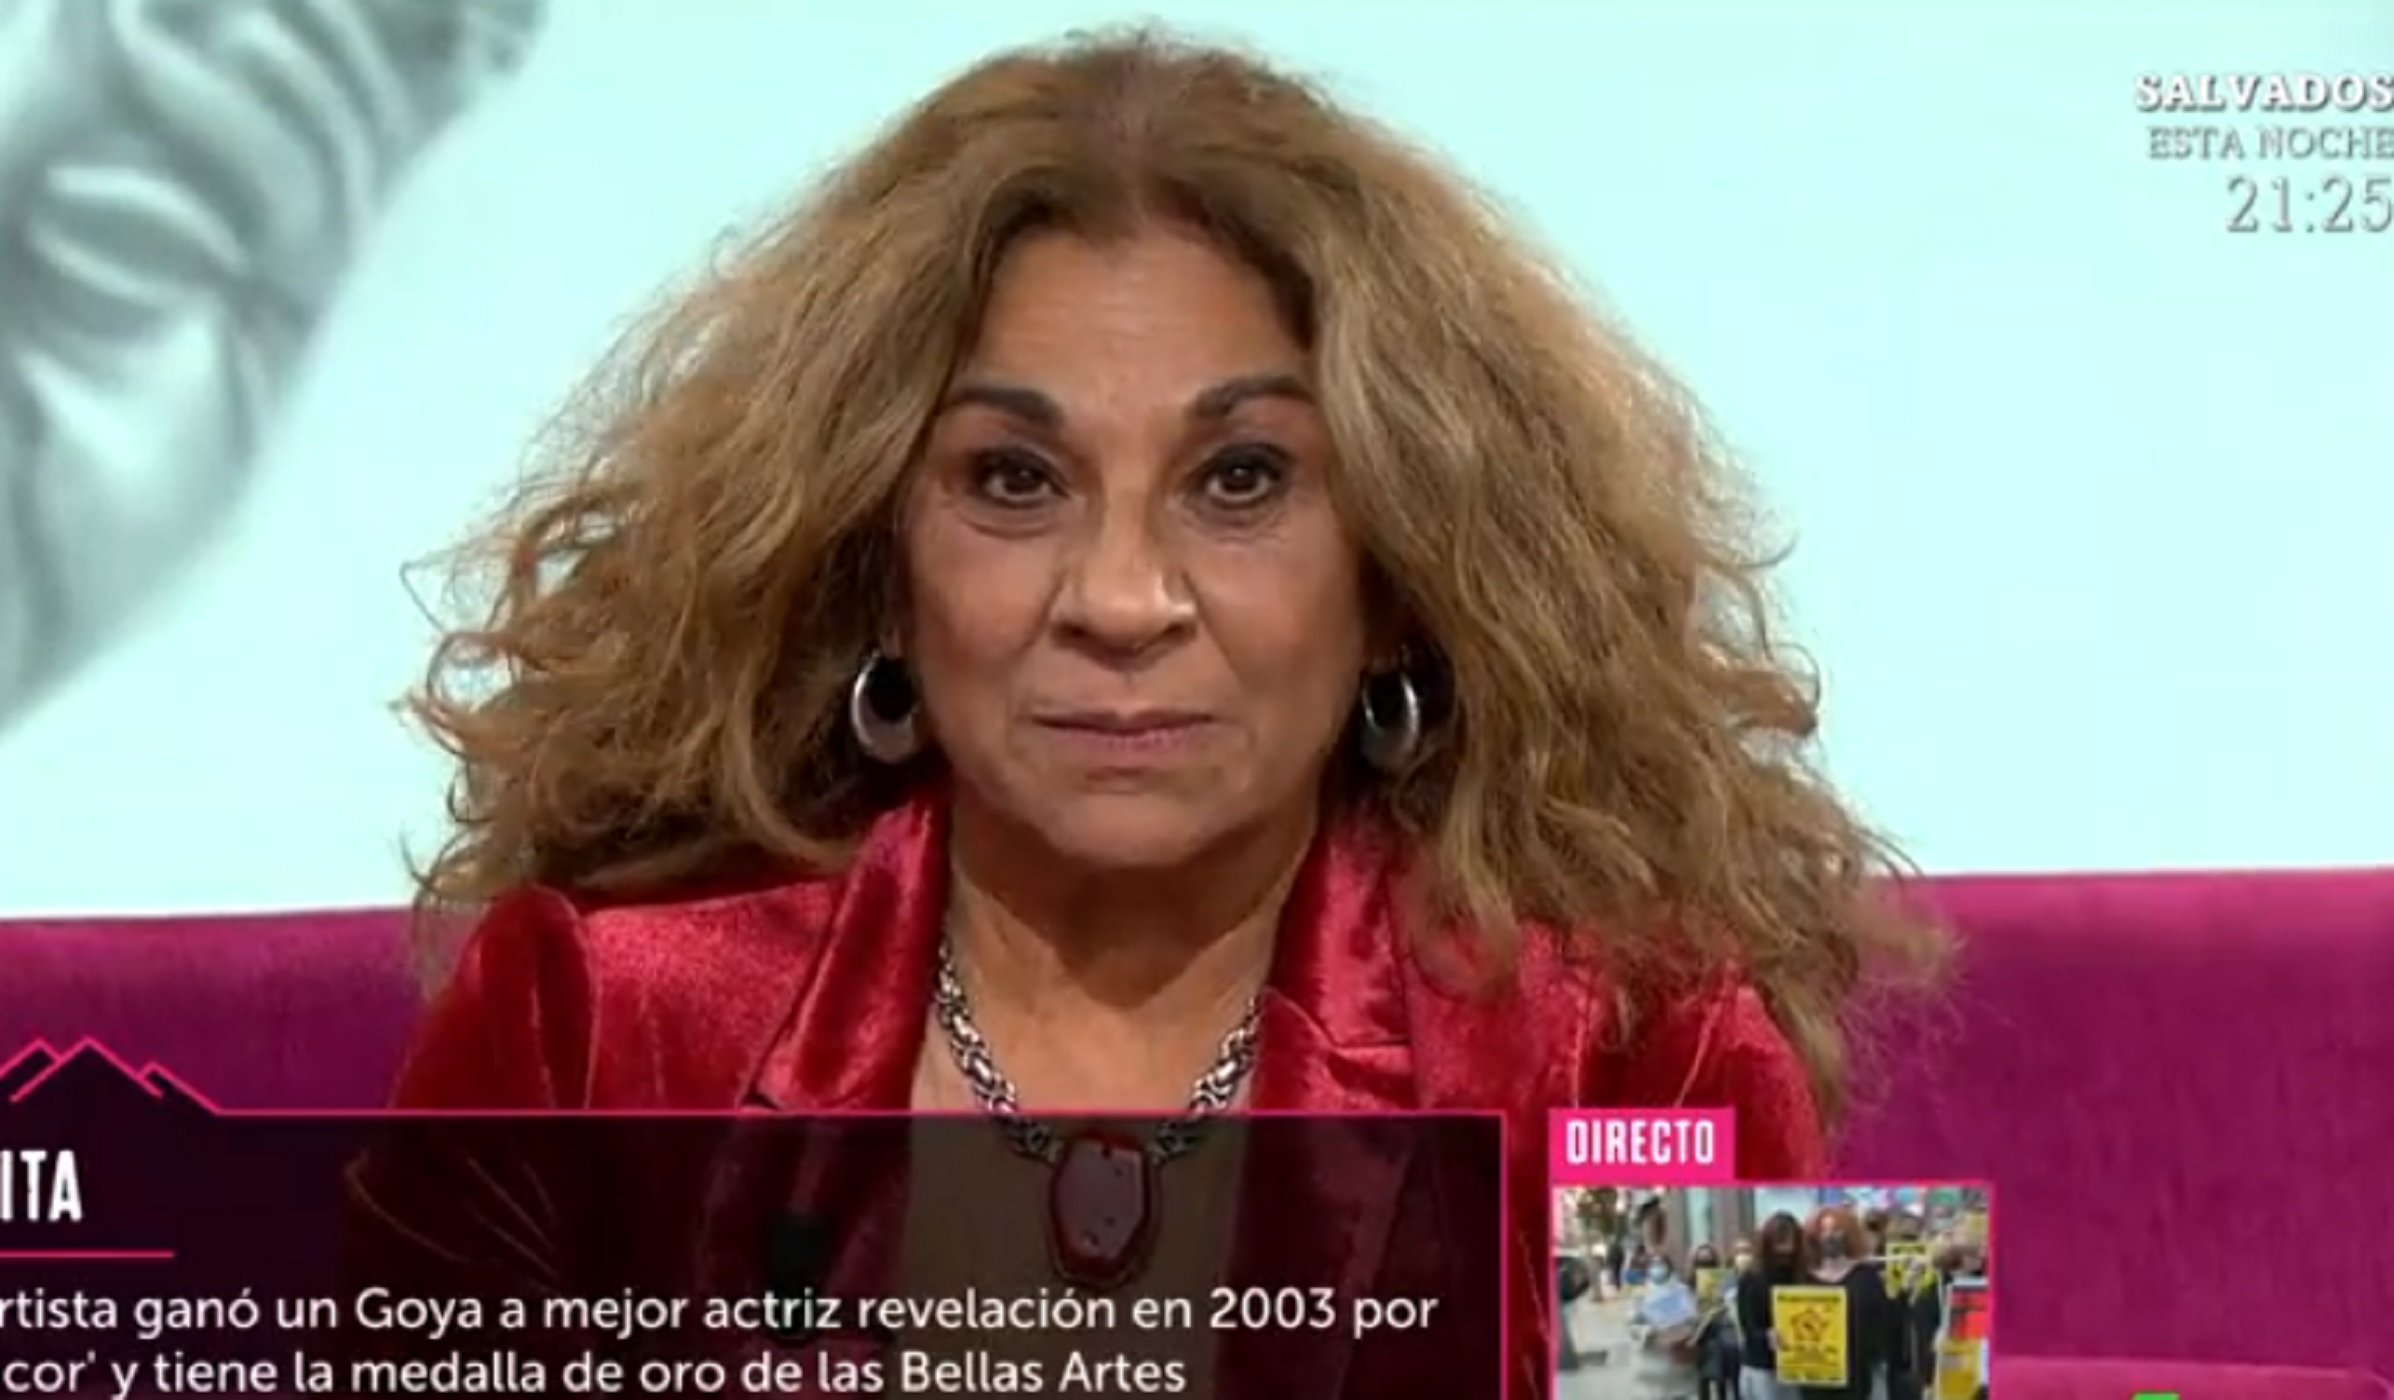 Lolita carrega contra un presentador de Telecinco i l'acusa de deure-li diners